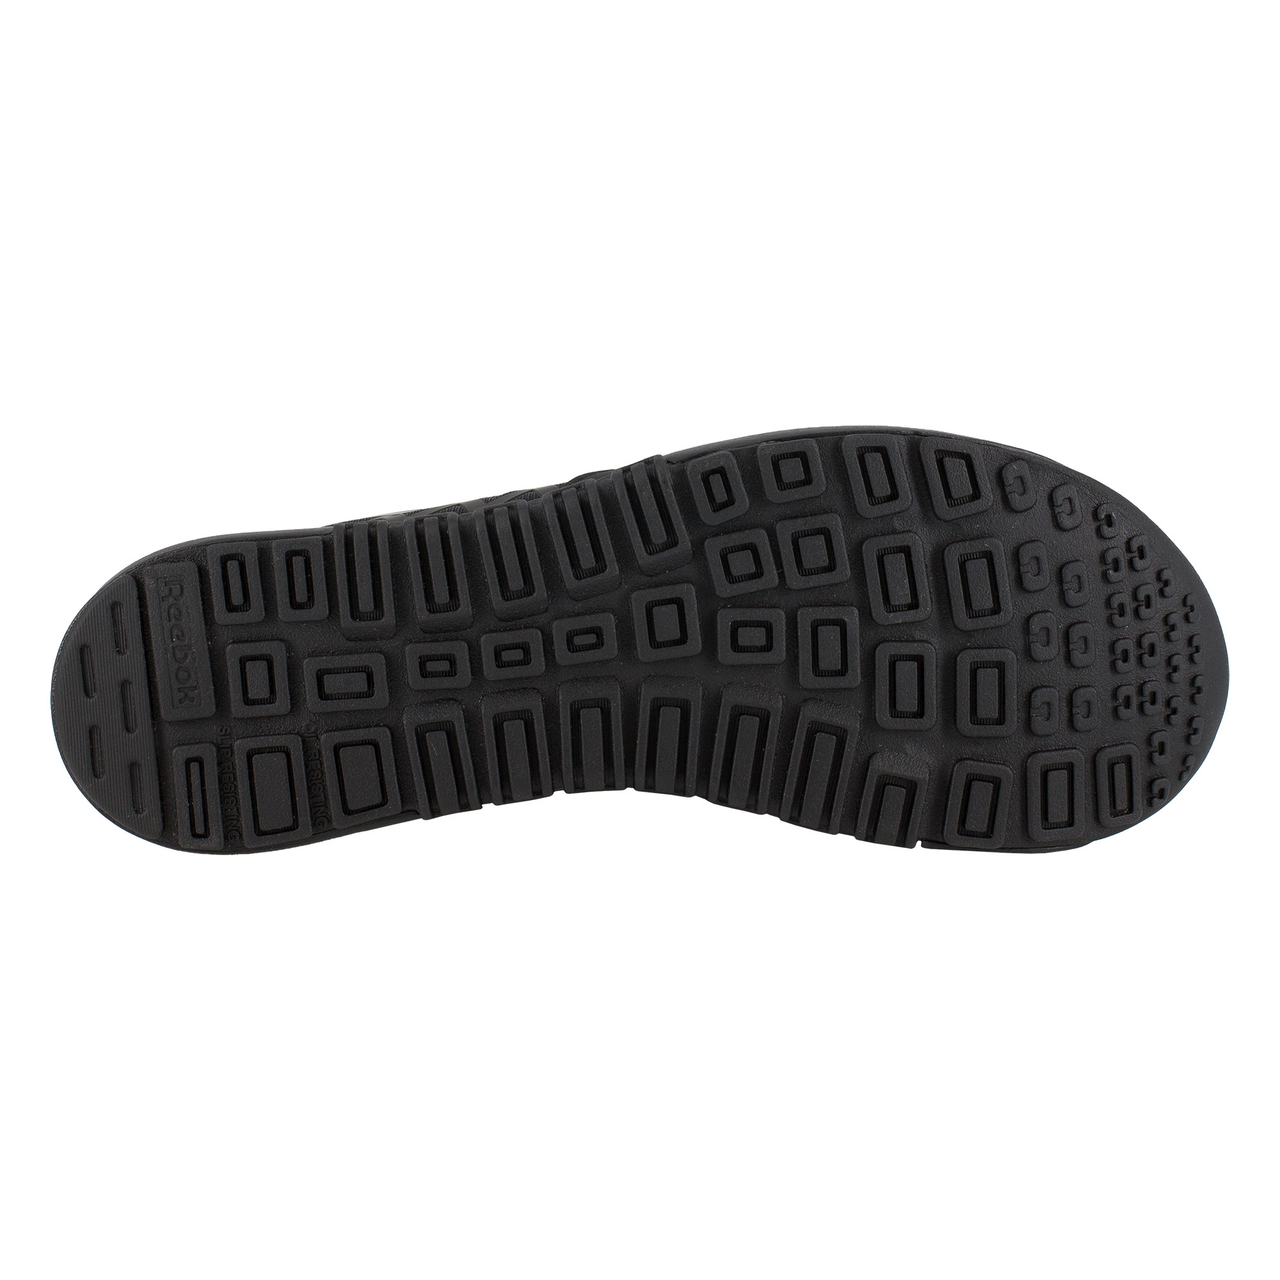 Reebok Men's Nano 8 Inch Tactical Boot - TAA Compliant Soft Toe Shoe -  Free Shipping